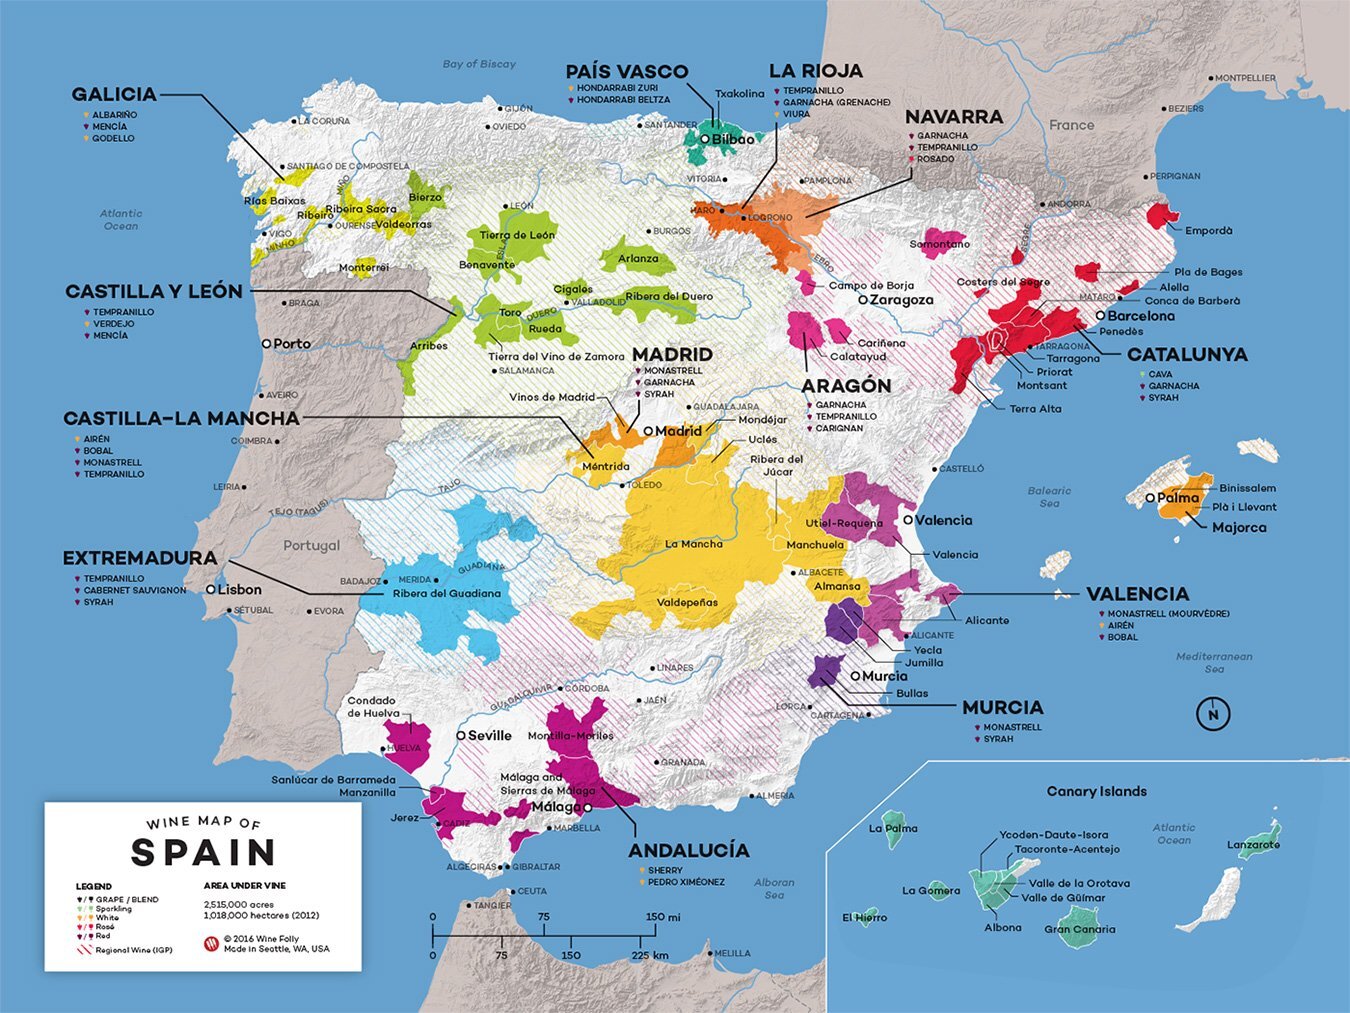 Spain-Wine-Map-2016-WineFolly.jpg